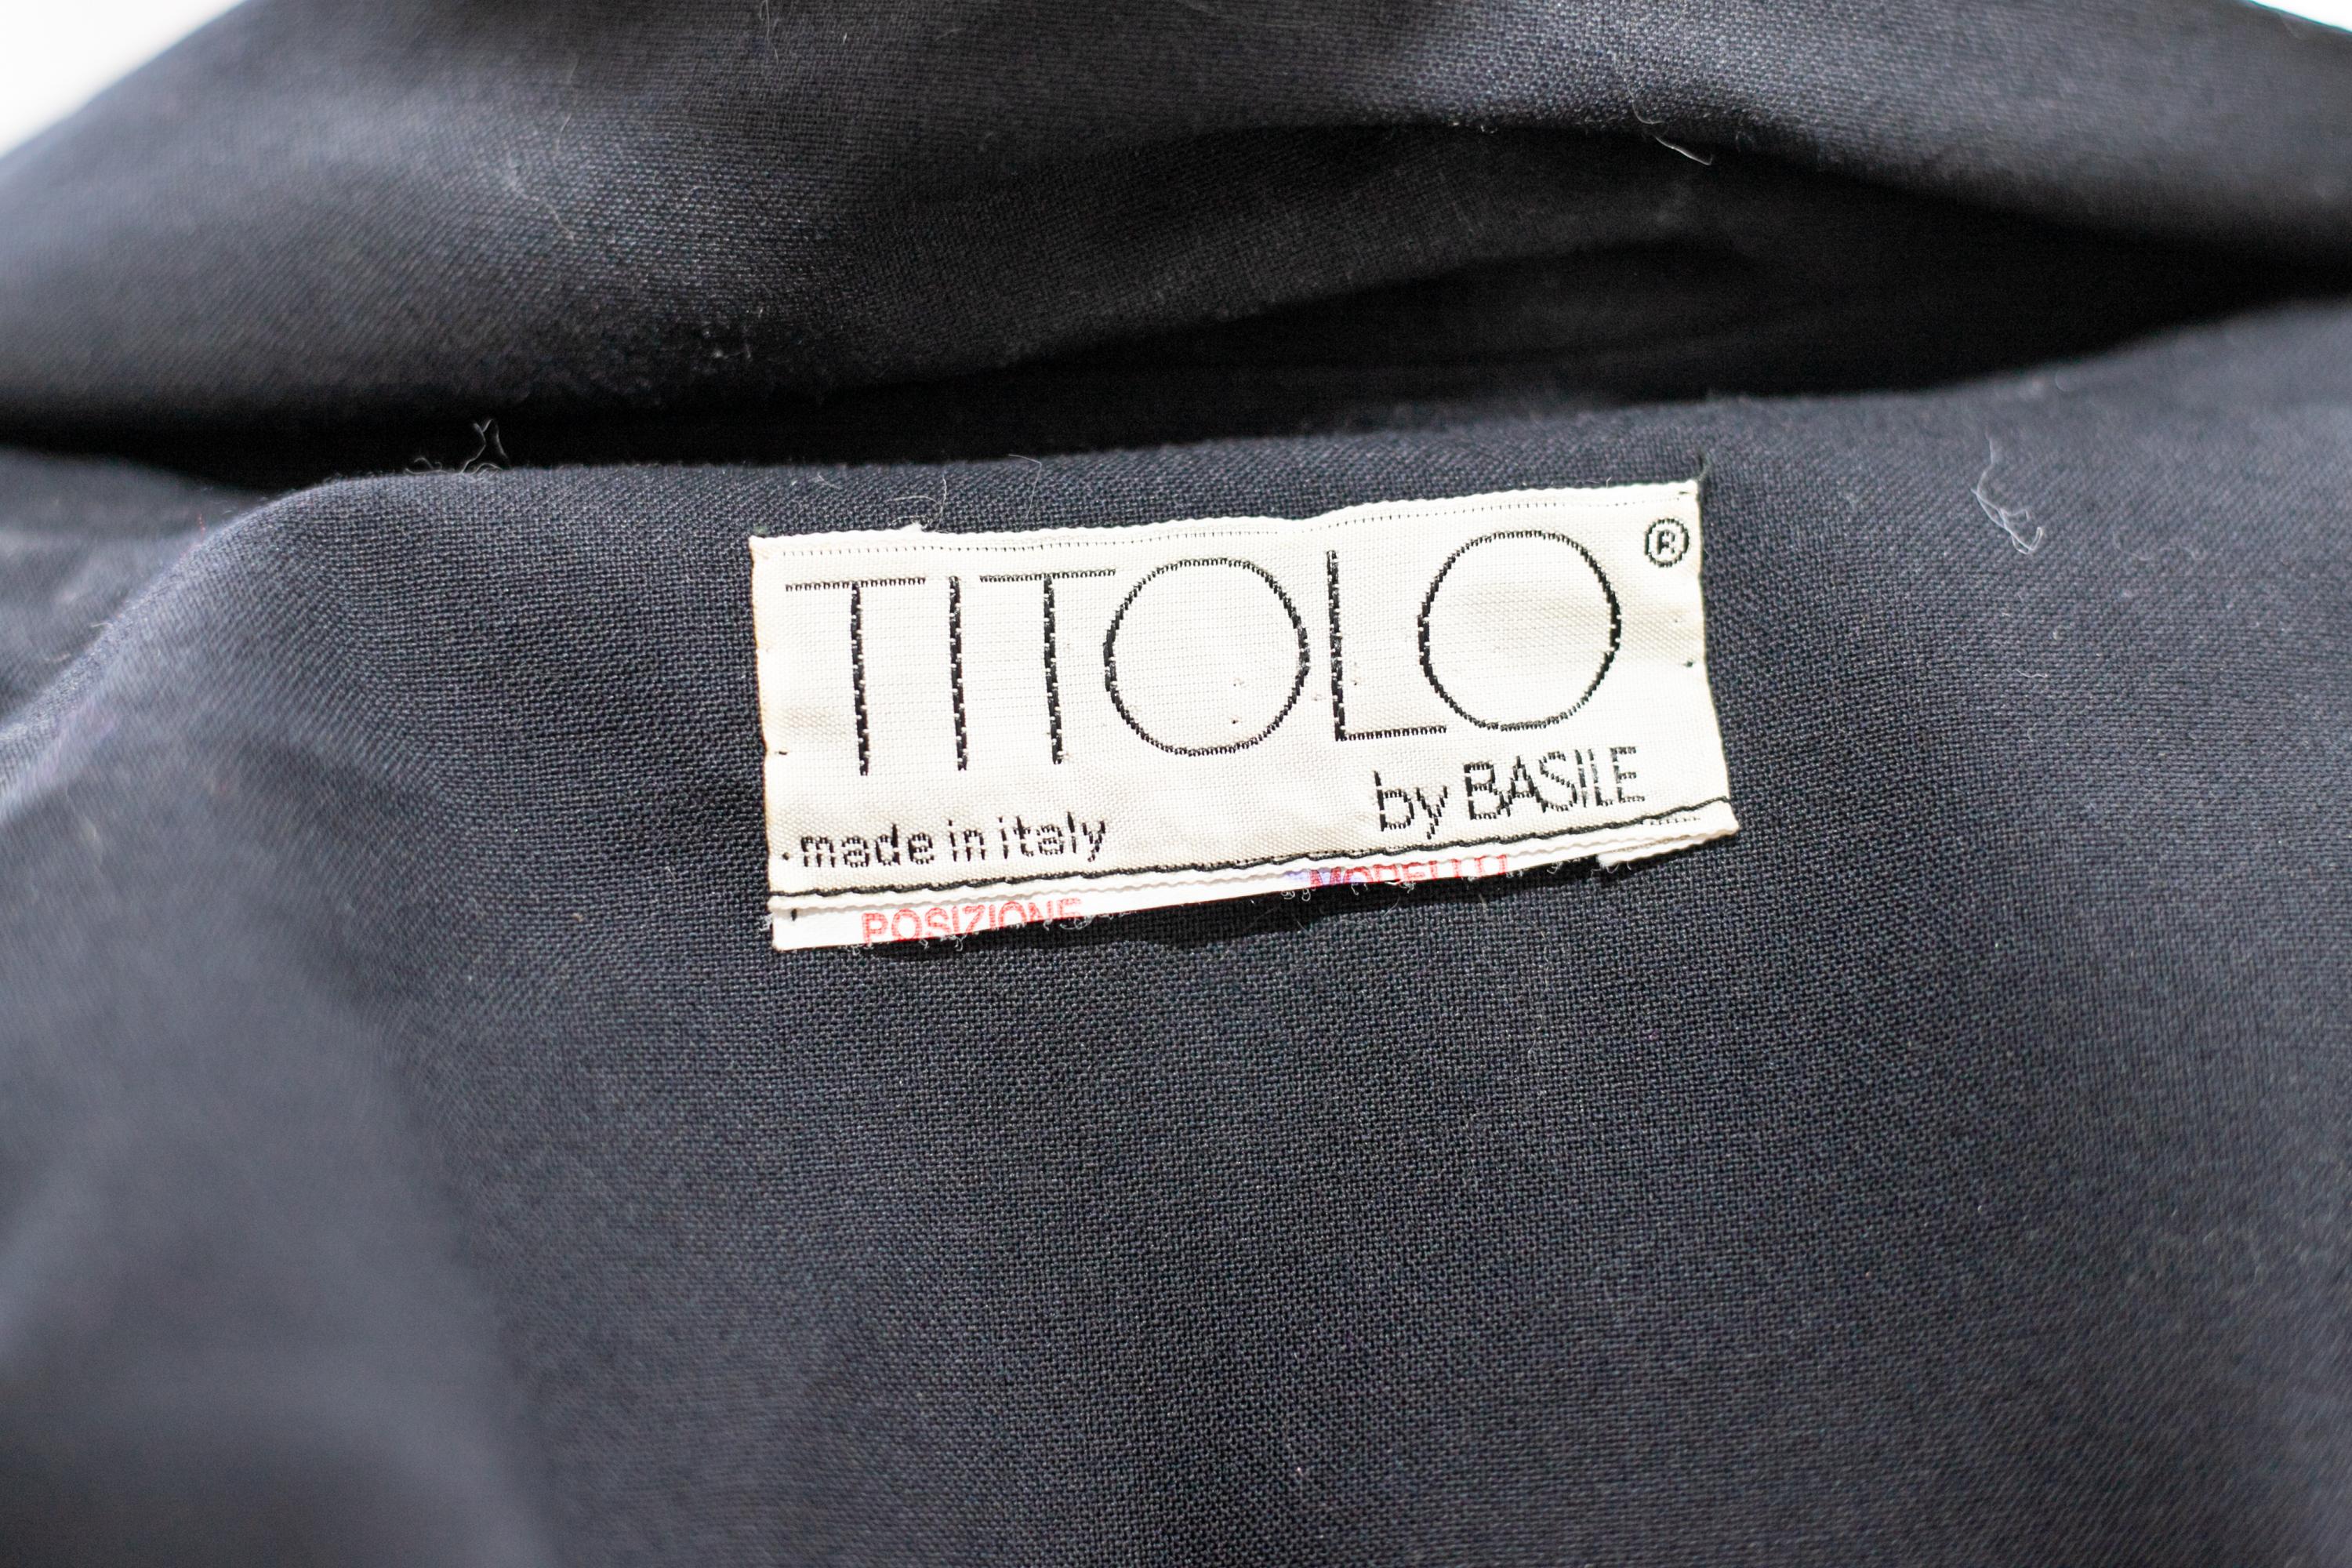 Joli trench-coat vintage conçu par Titolo pour Basile dans les années 1990, fabriqué en Italie.
ÉTIQUETTE ORIGINALE.
Le blazer est entièrement réalisé en coton noir avec des manches longues mais souples.
Le col a une coupe classique et standard, qui